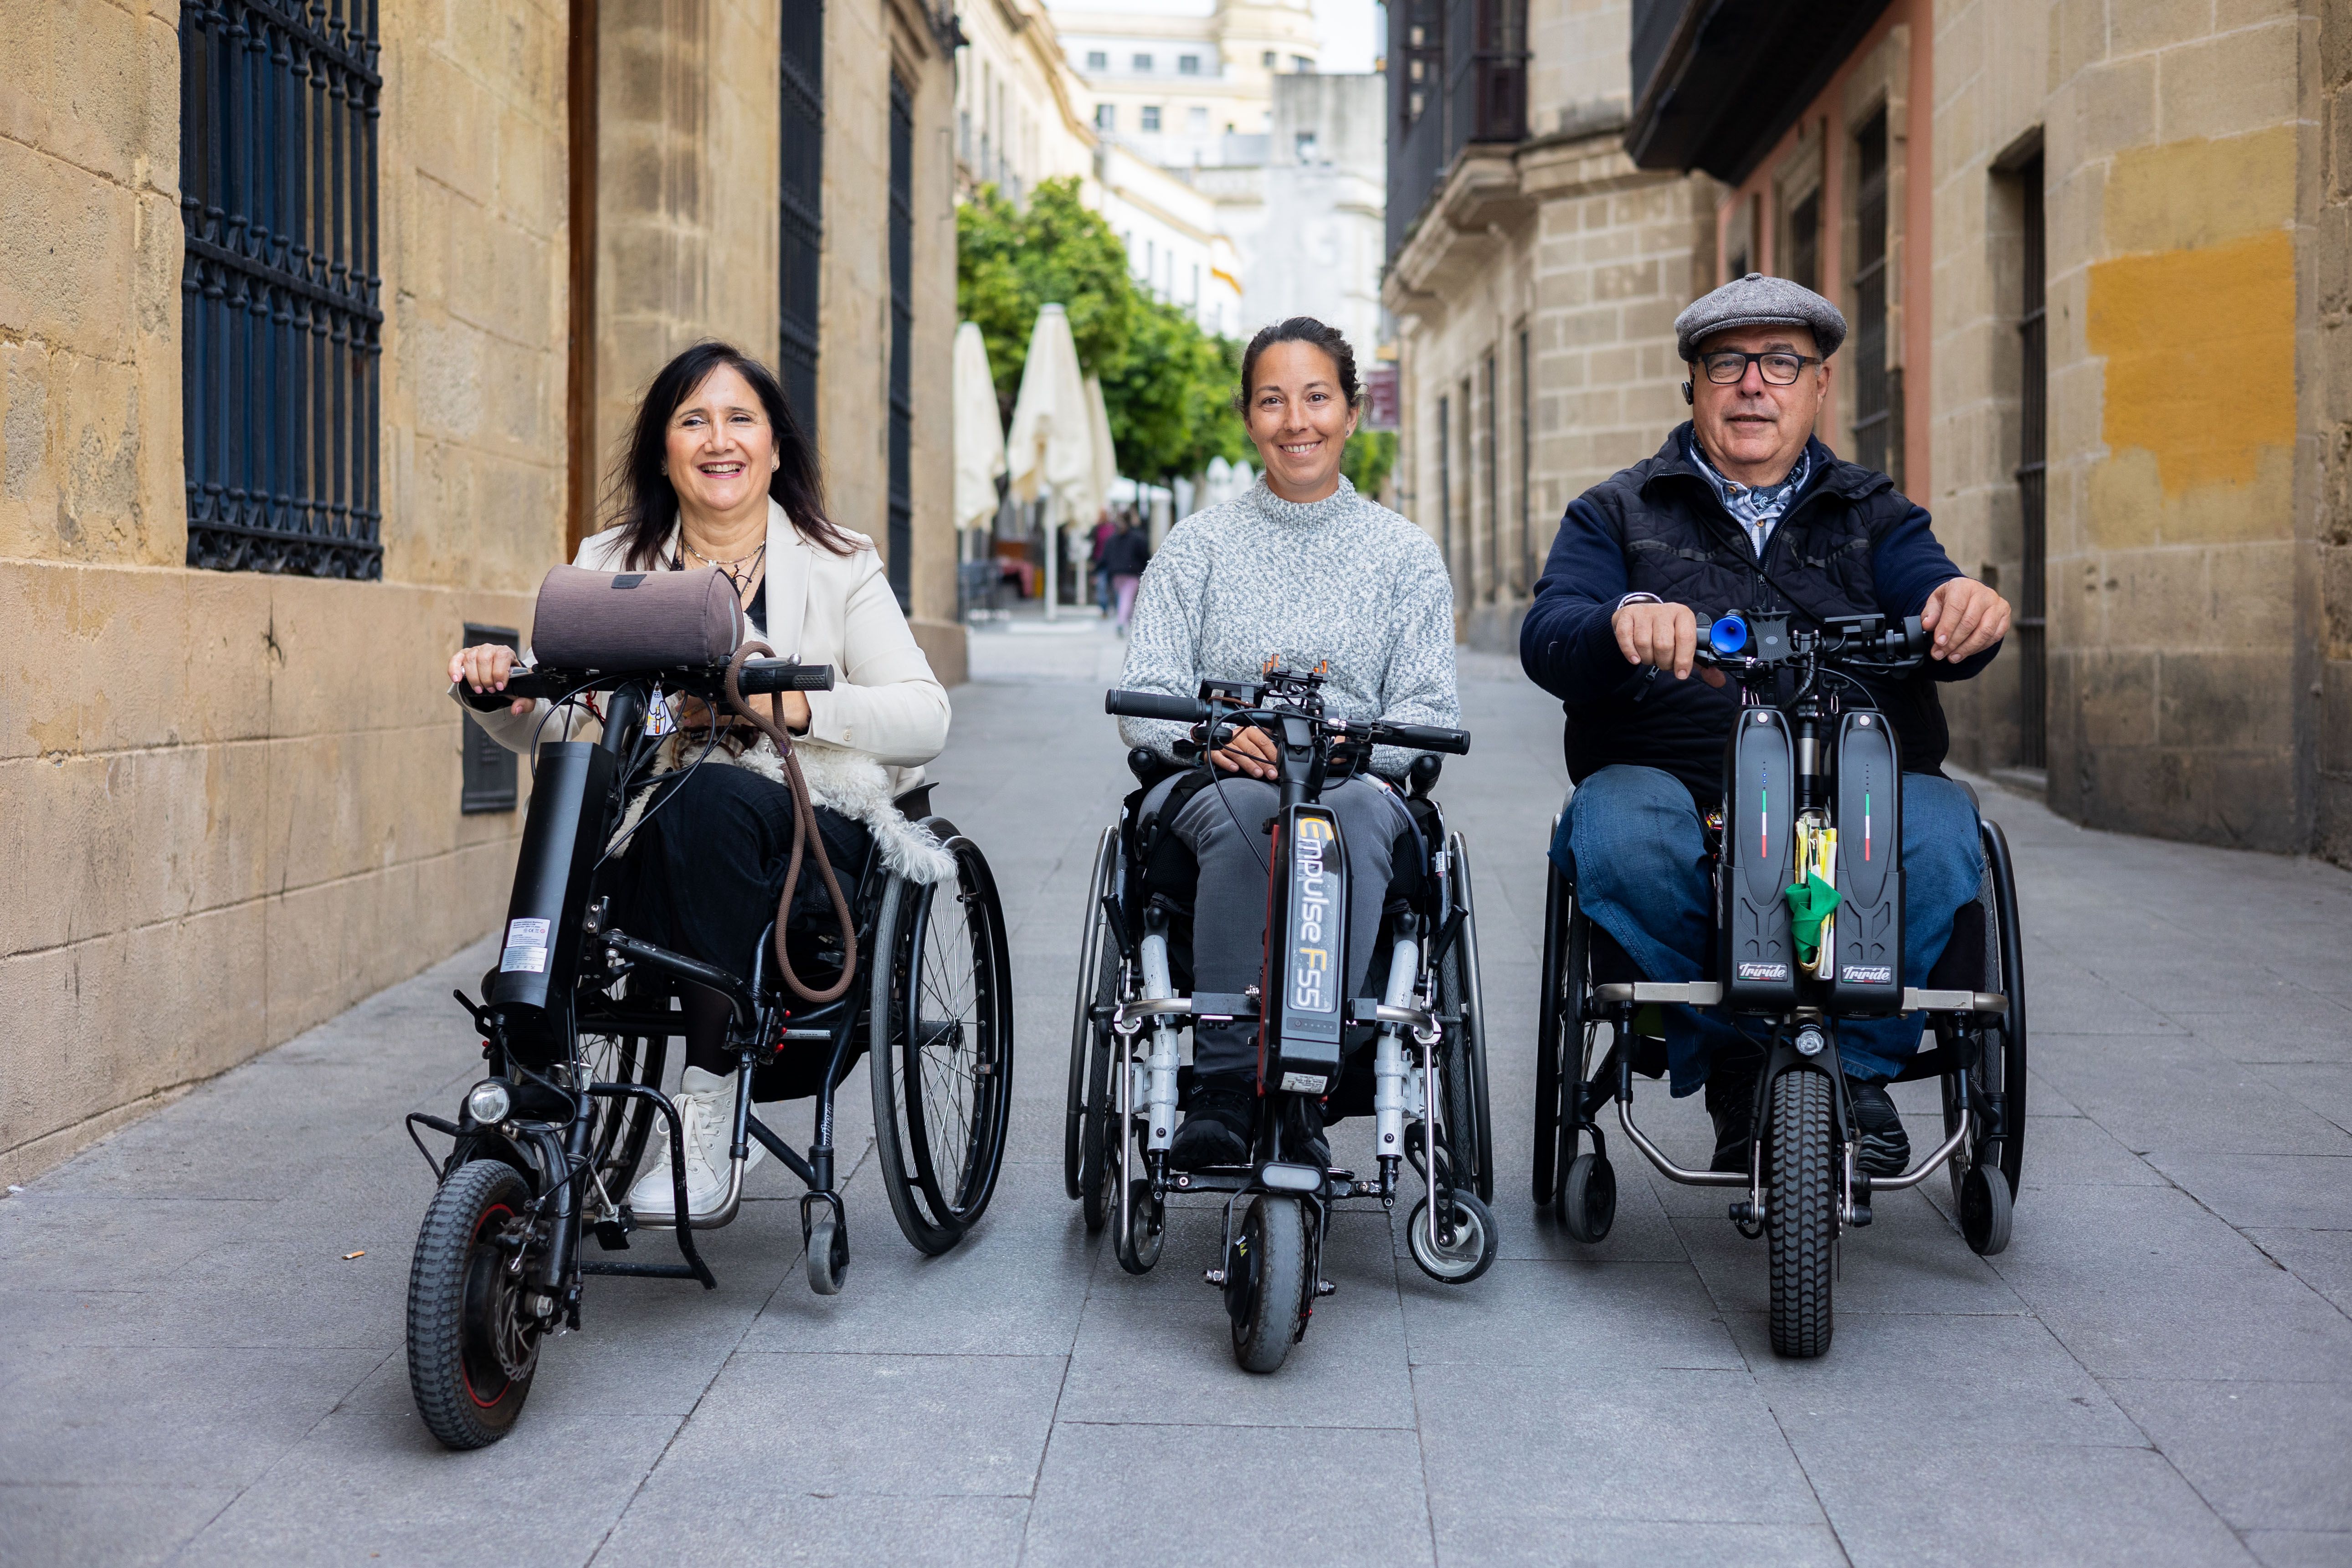 Malu, Marta y Jose Luis, lesionados medulares en la provincia de Cádiz. Vivir sin sentir las piernas: "Ninguna ciudad está adaptada pero, aunque sea duro, continuamos"